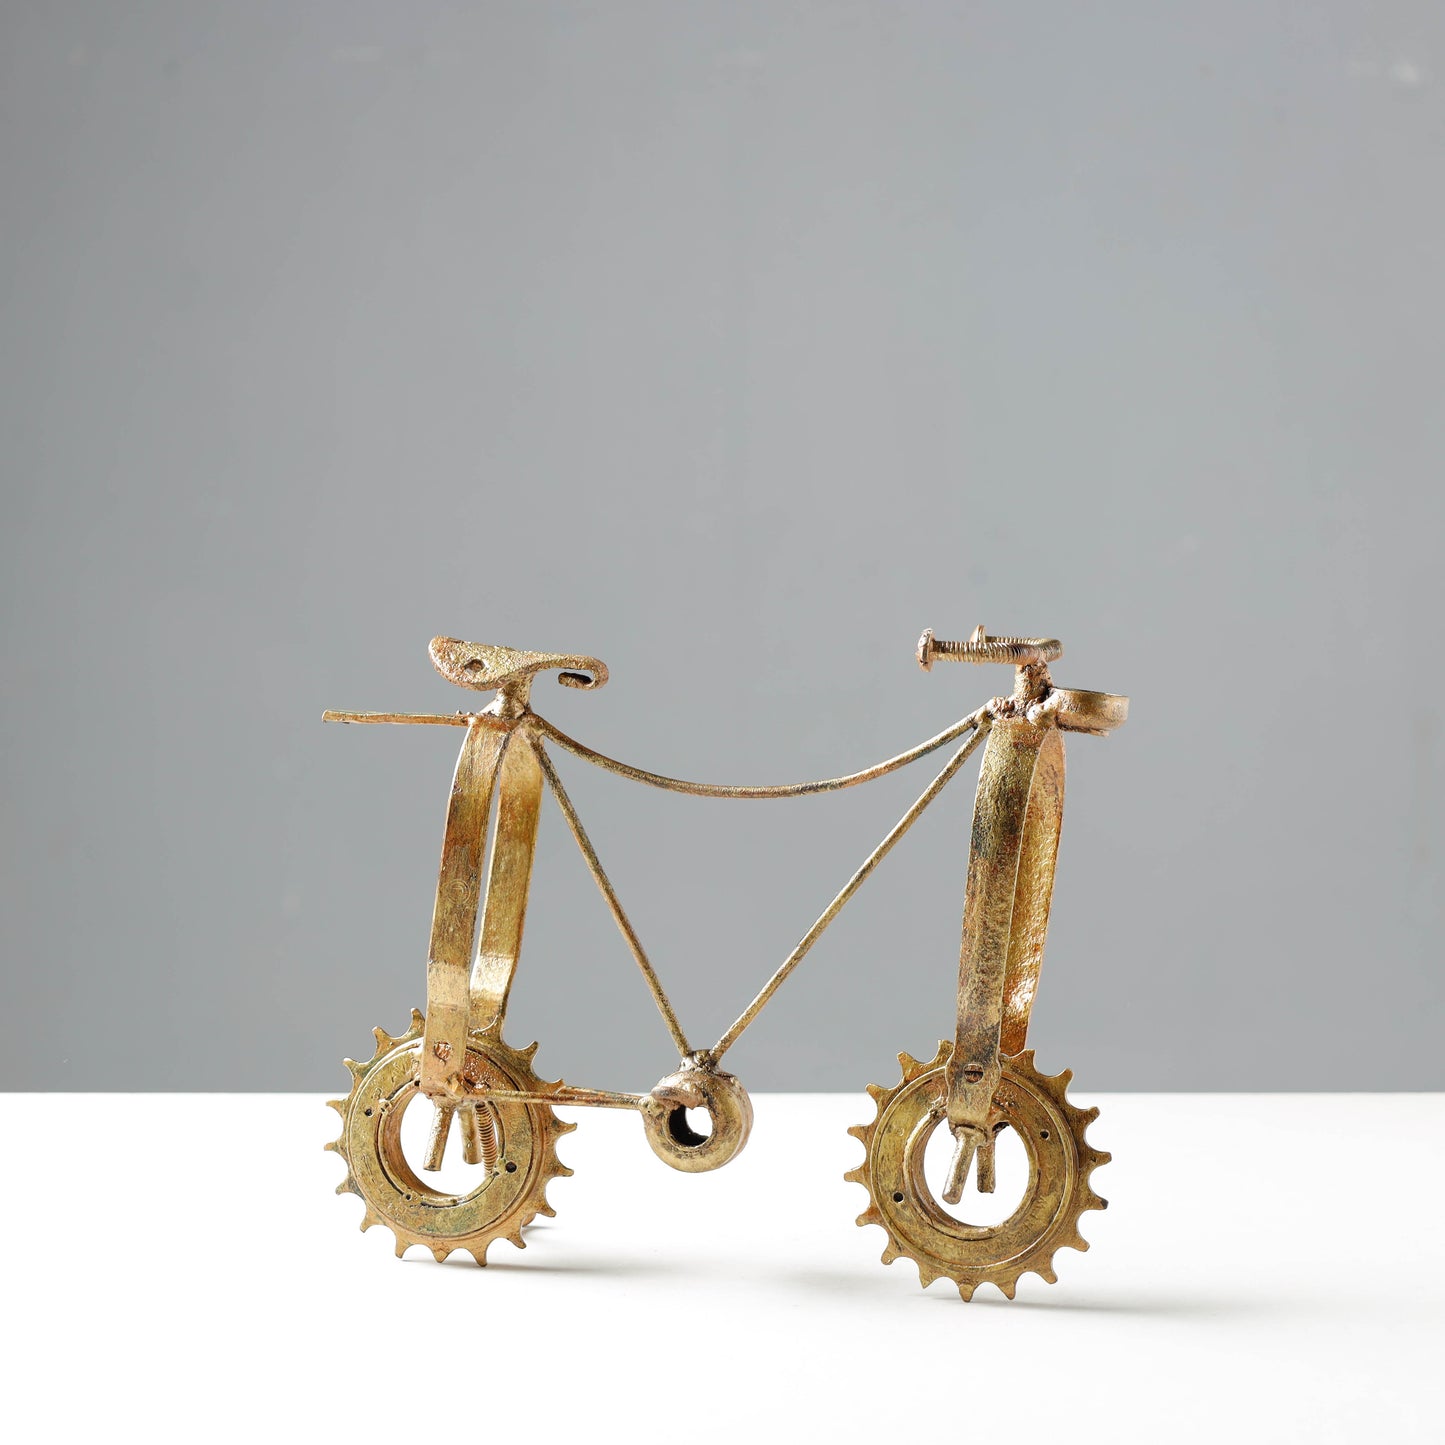 Bicycle - Handmade Recycled Metal Sculpture by Debabrata Ruidas